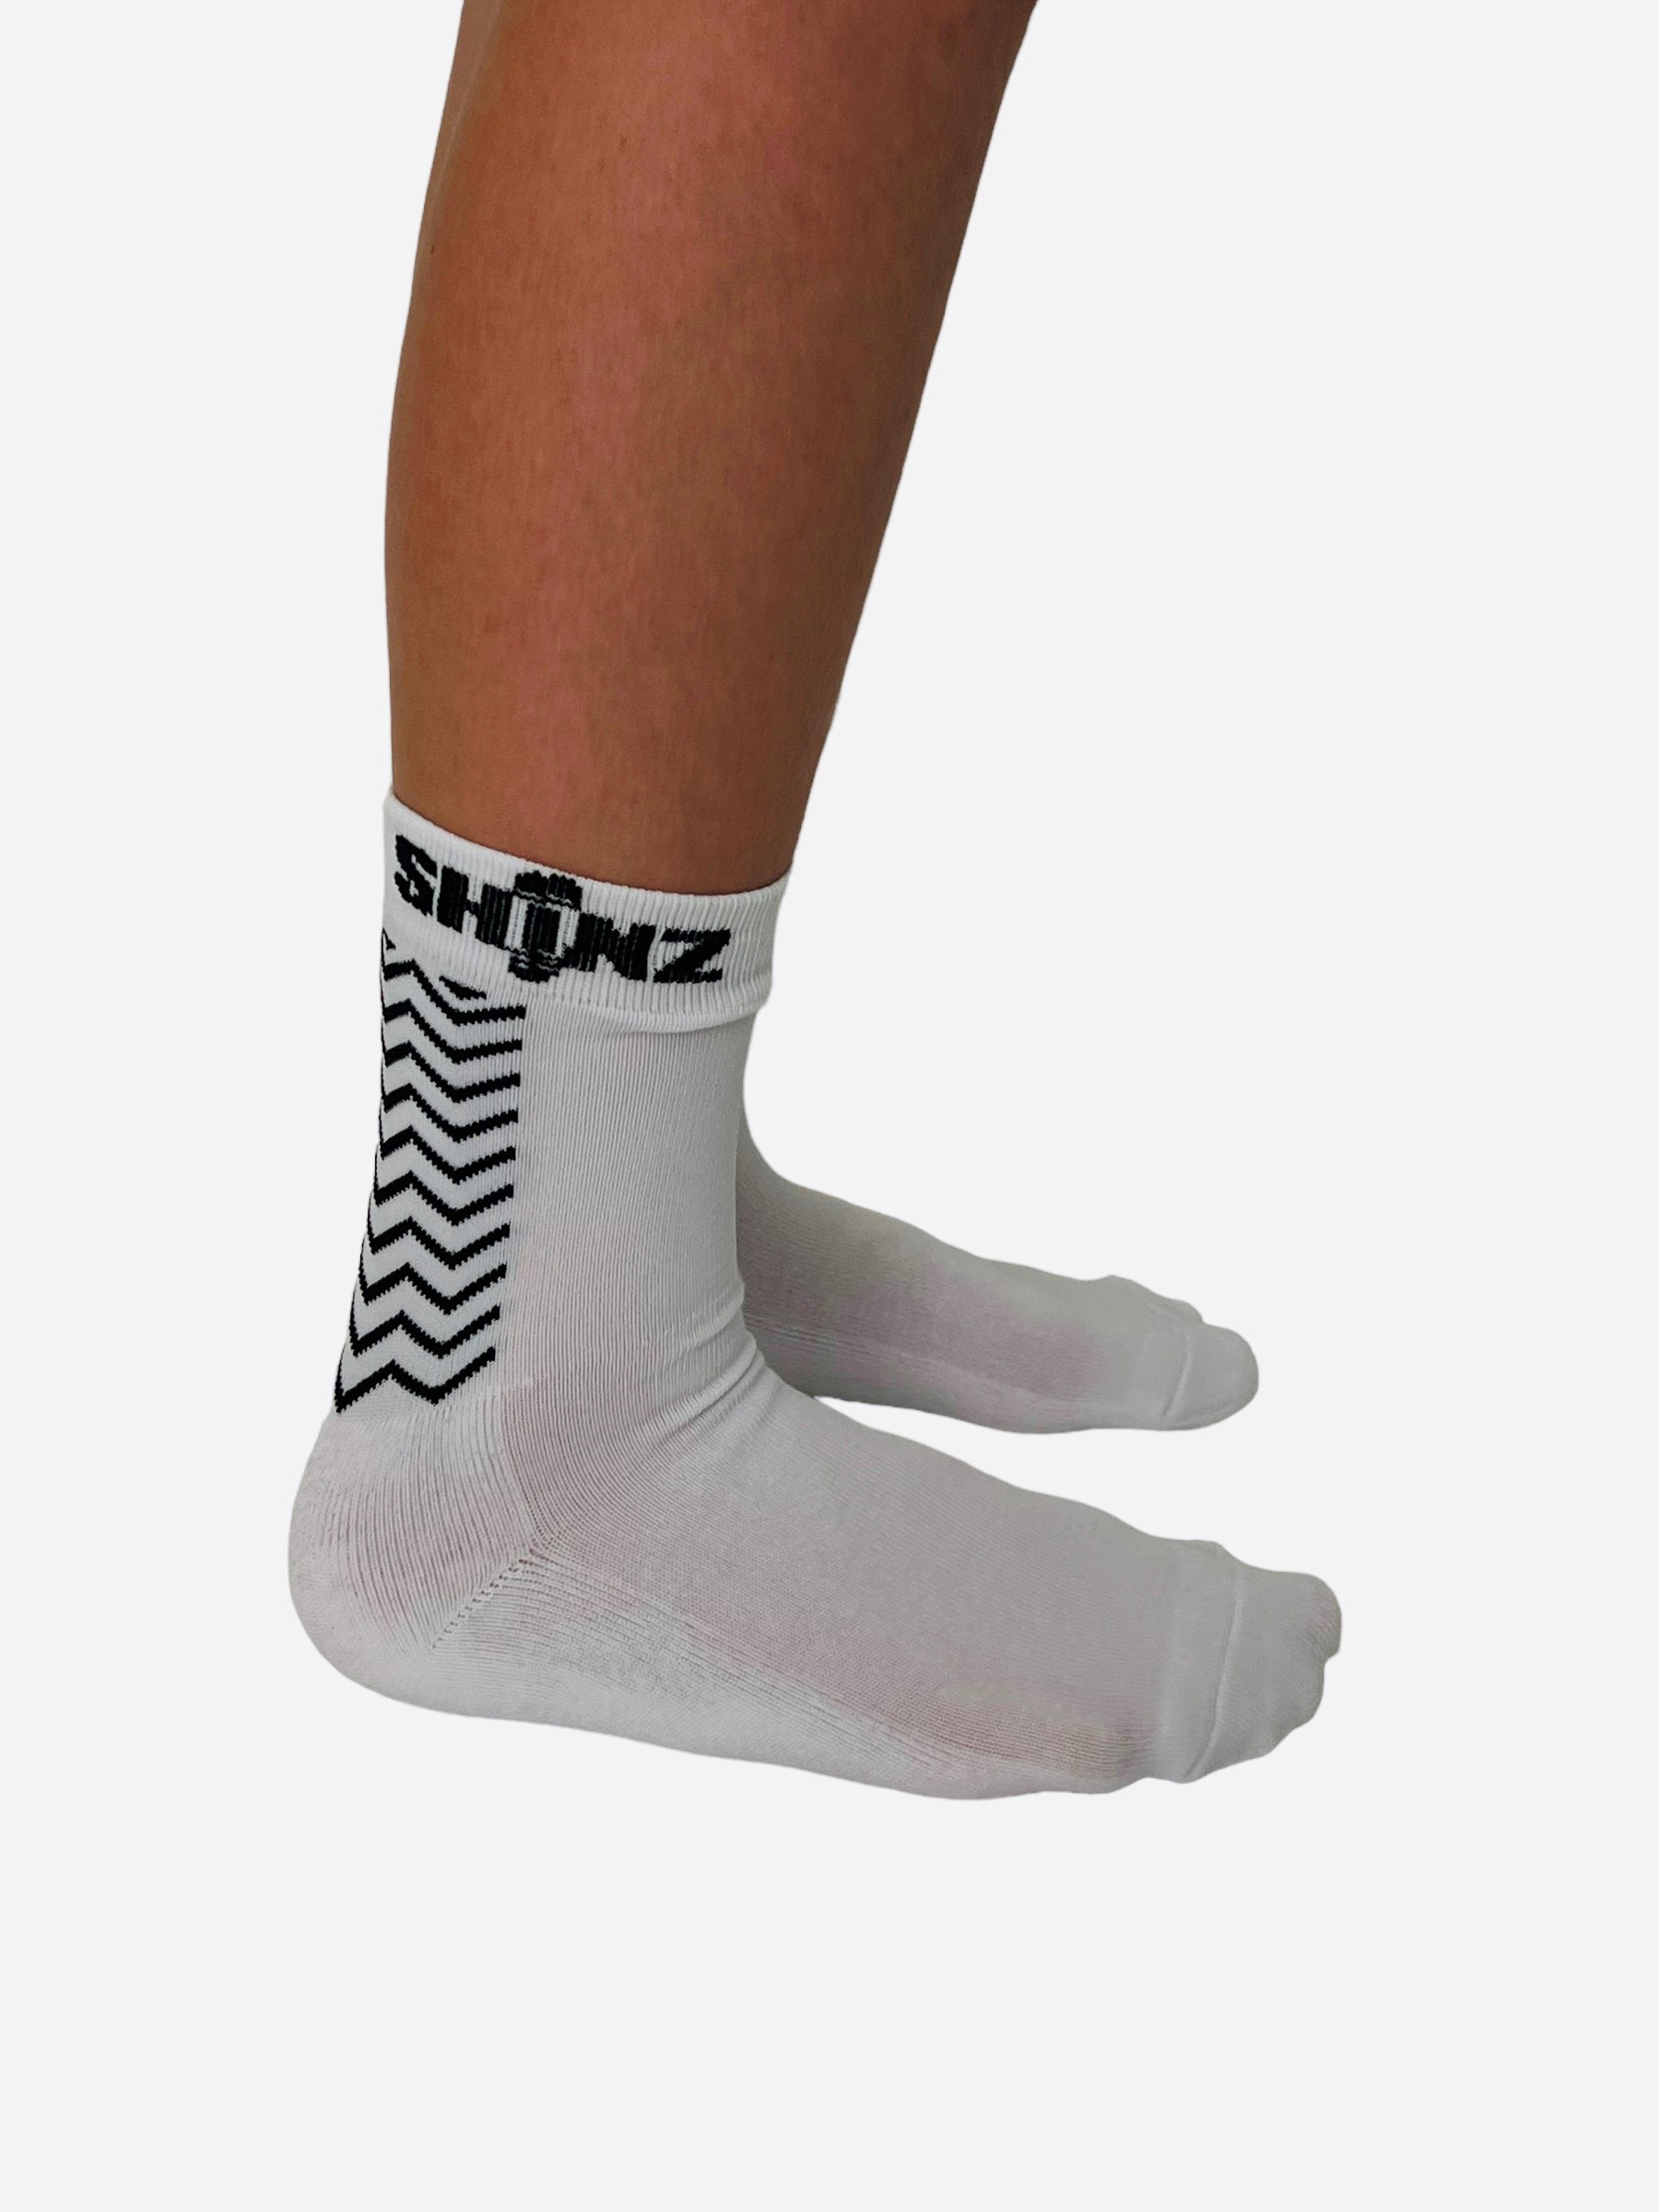 Grip Socks (Kids) - Shinz UK